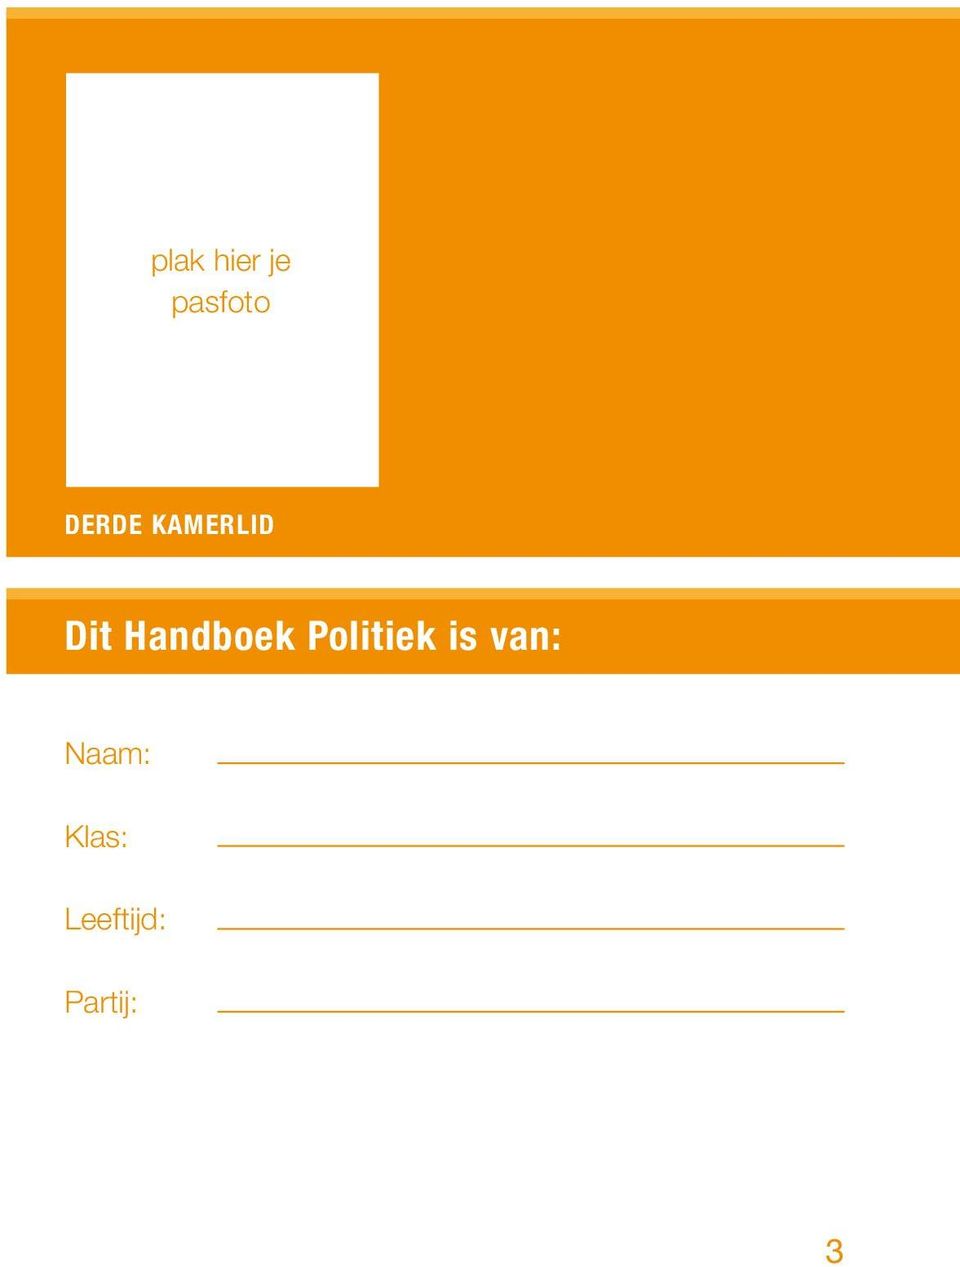 Handboek Politiek is